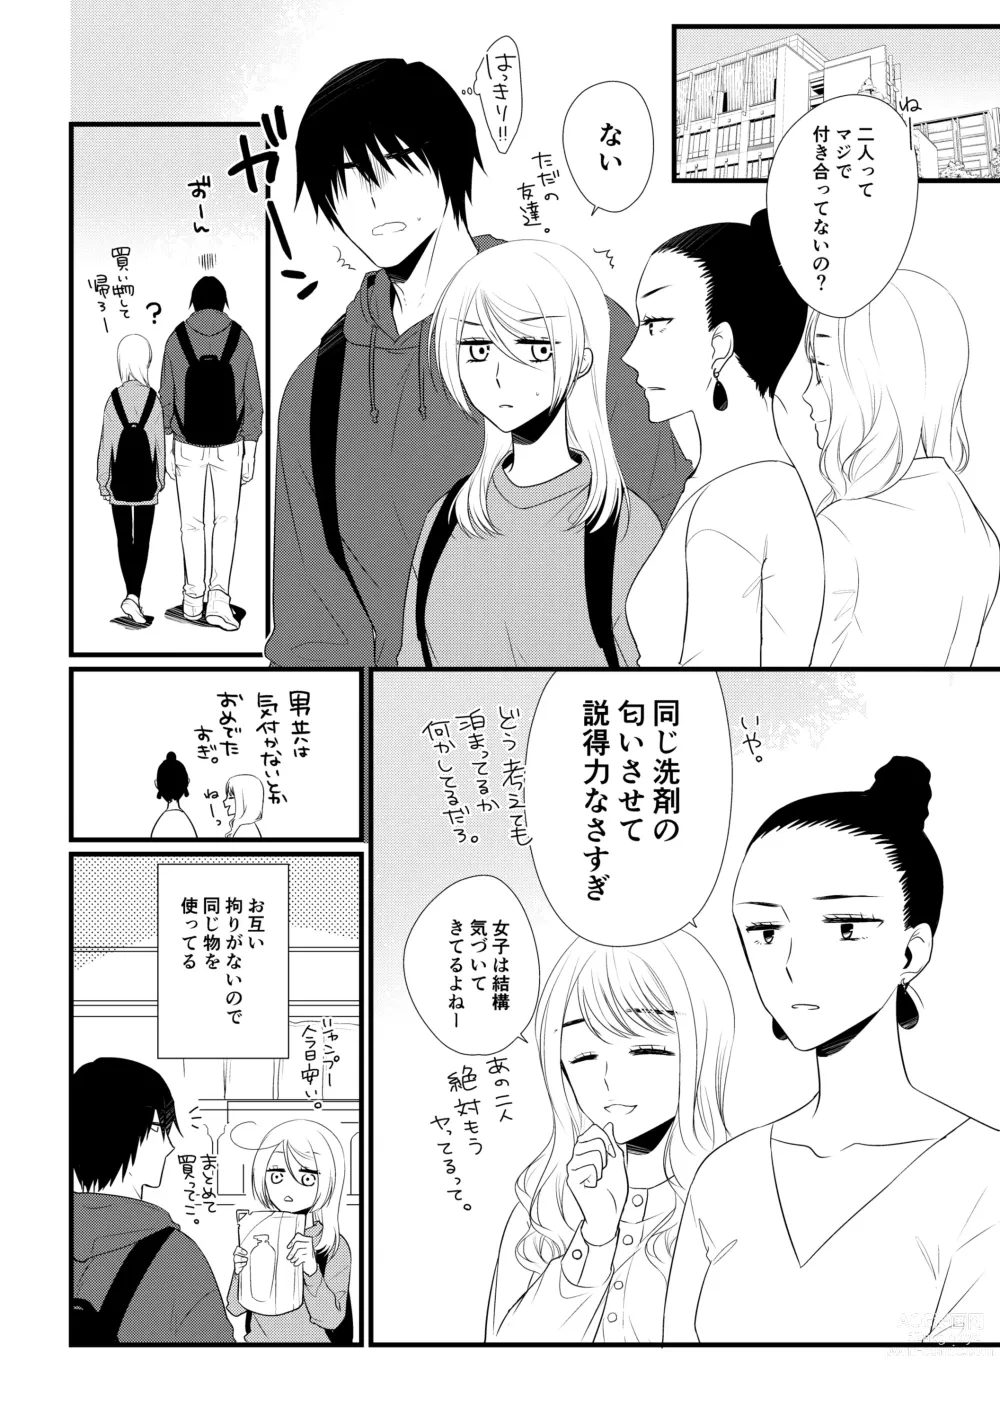 Page 7 of doujinshi Itsuki to Yuusei 2